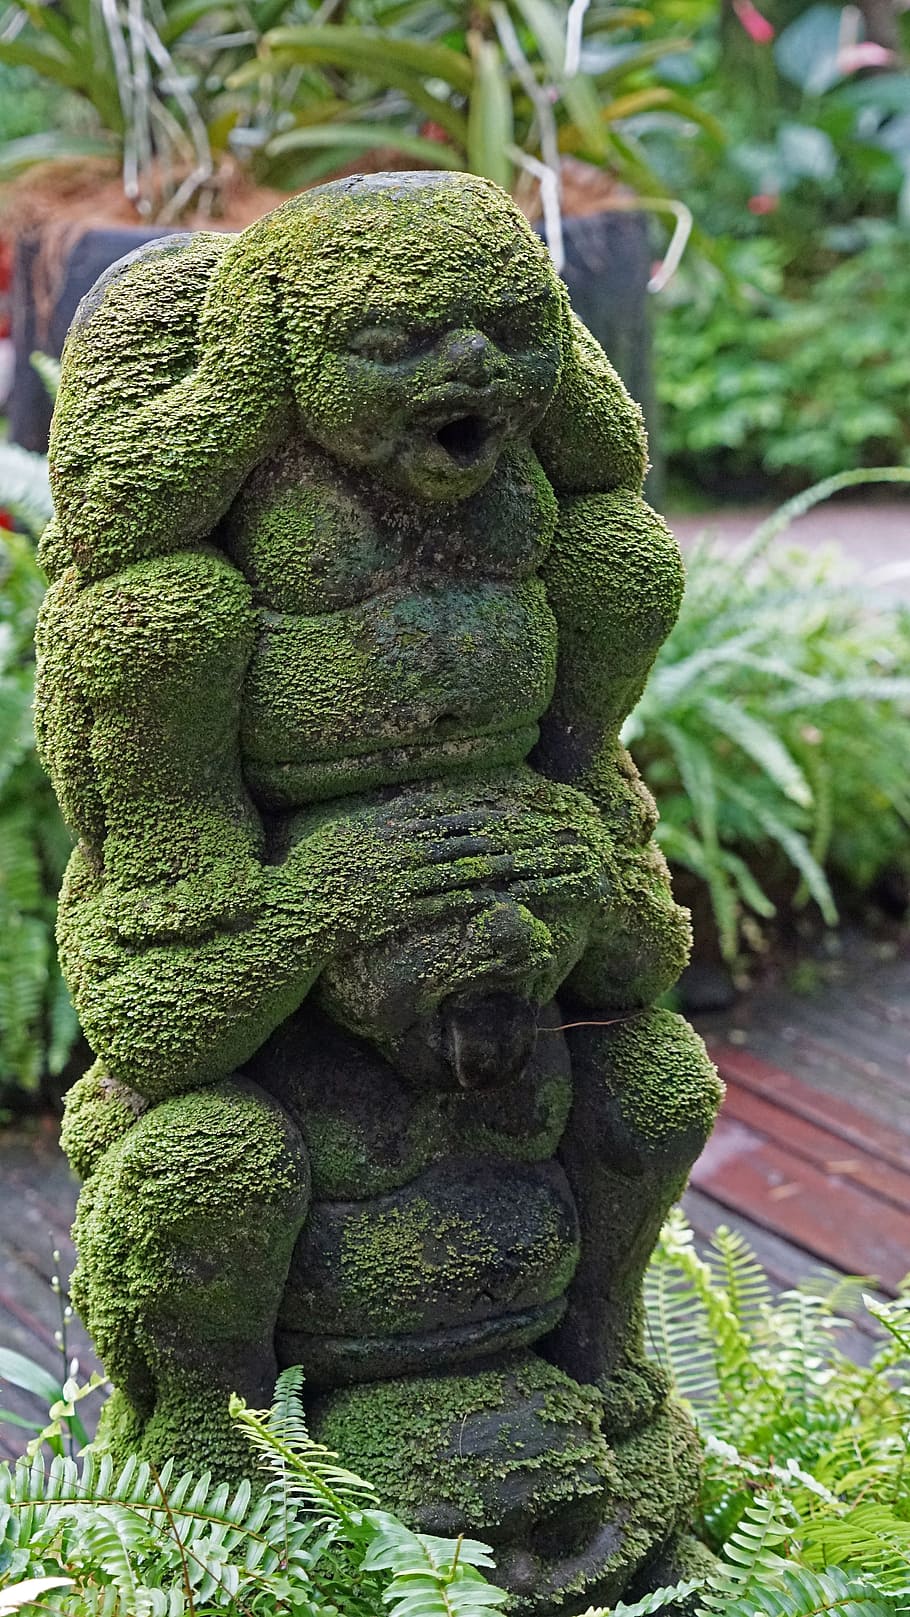 Sculpture, Singapore, Orchid, Garden, orchid garden, moss, botanical garden, green color, close-up, day